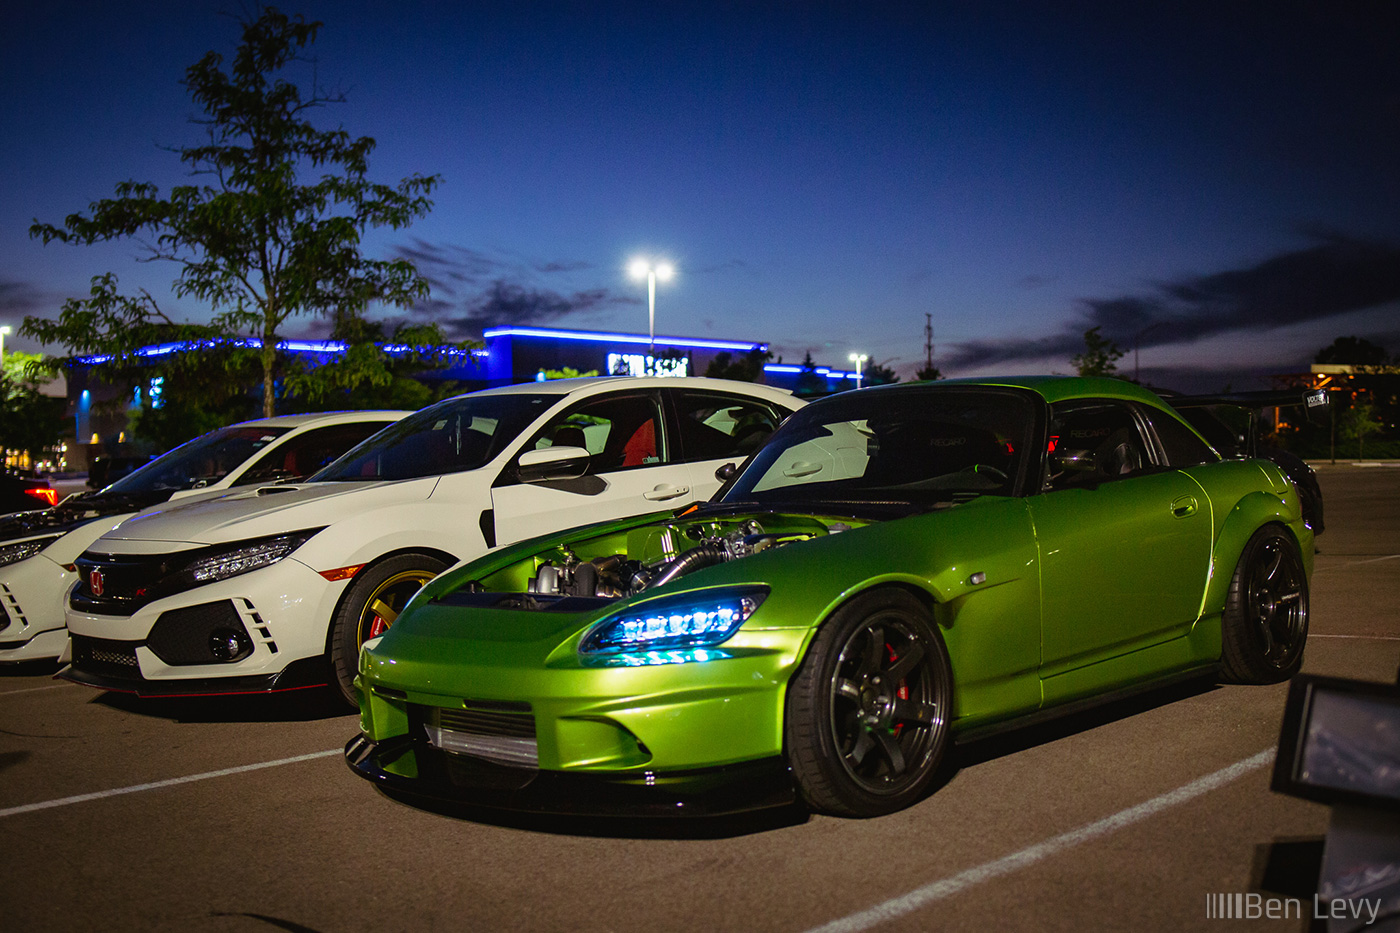 Hondas at a Car Meet at Night